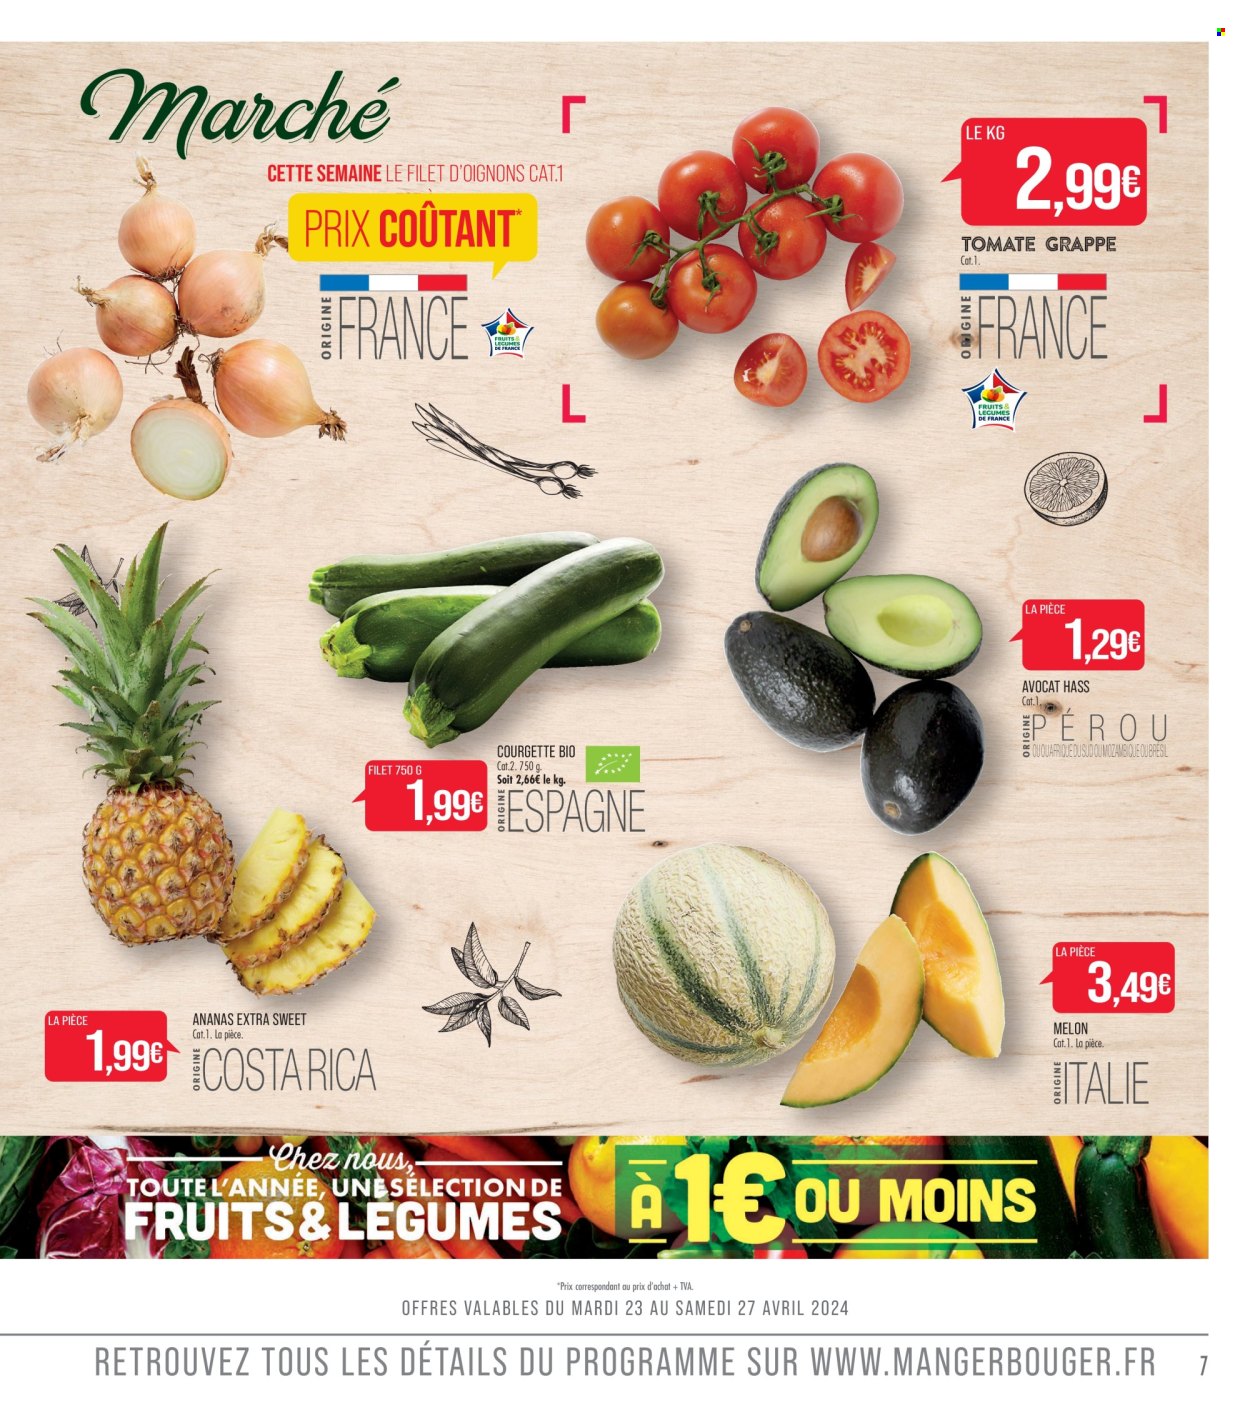 Catalogue Supermarché Match - 23.04.2024 - 05.05.2024. 